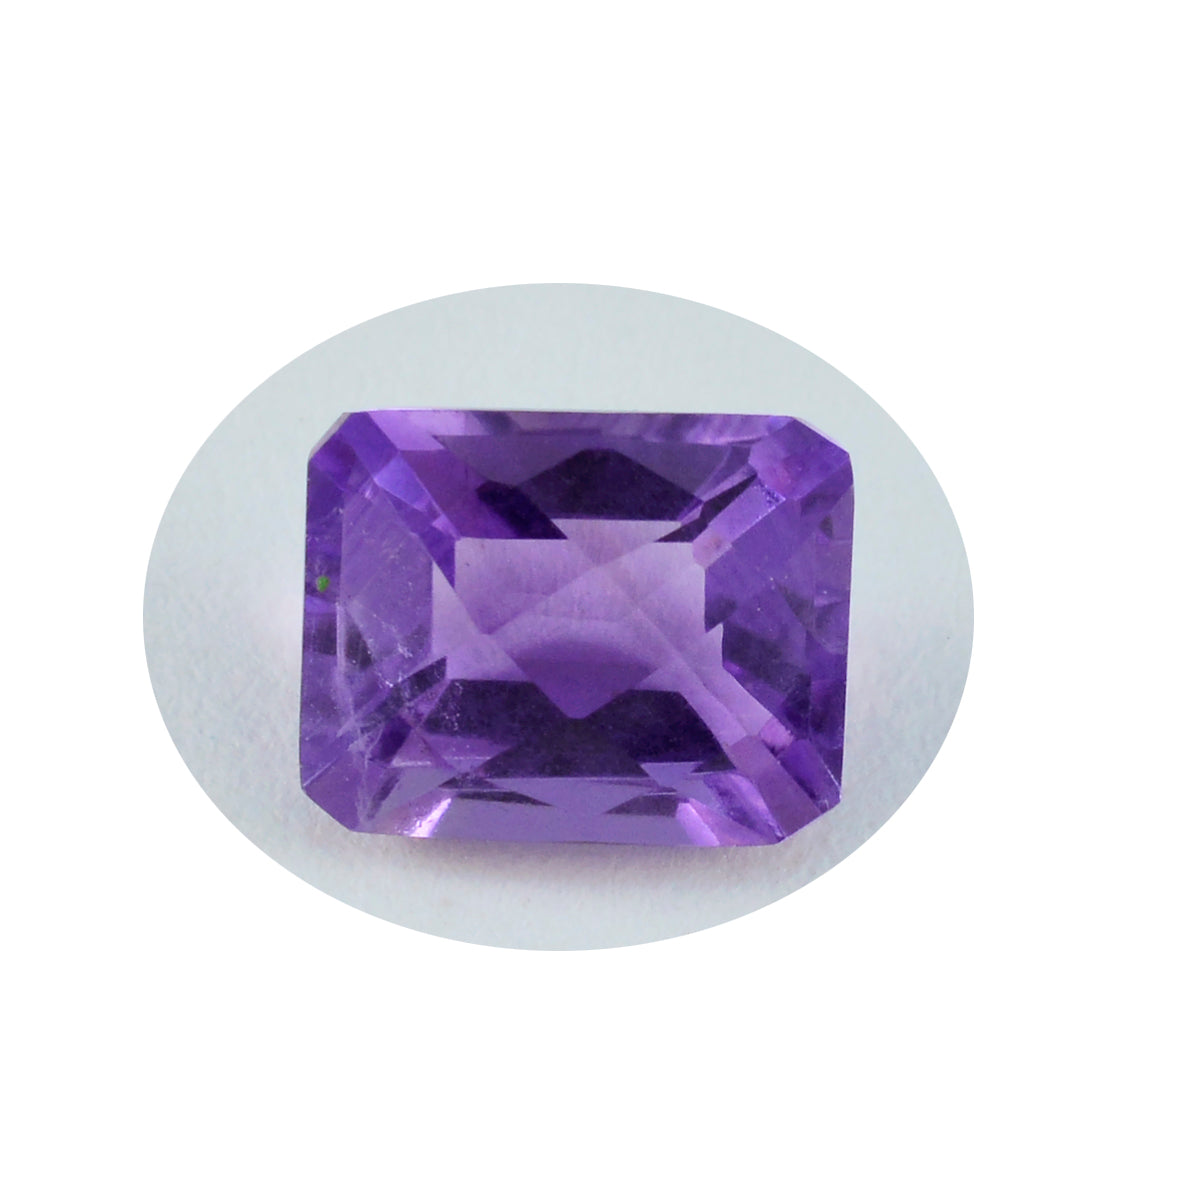 Riyogems 1PC Real Purple Amethyst Faceted 8X10 mm Octagon Shape A+1 Quality Gemstone